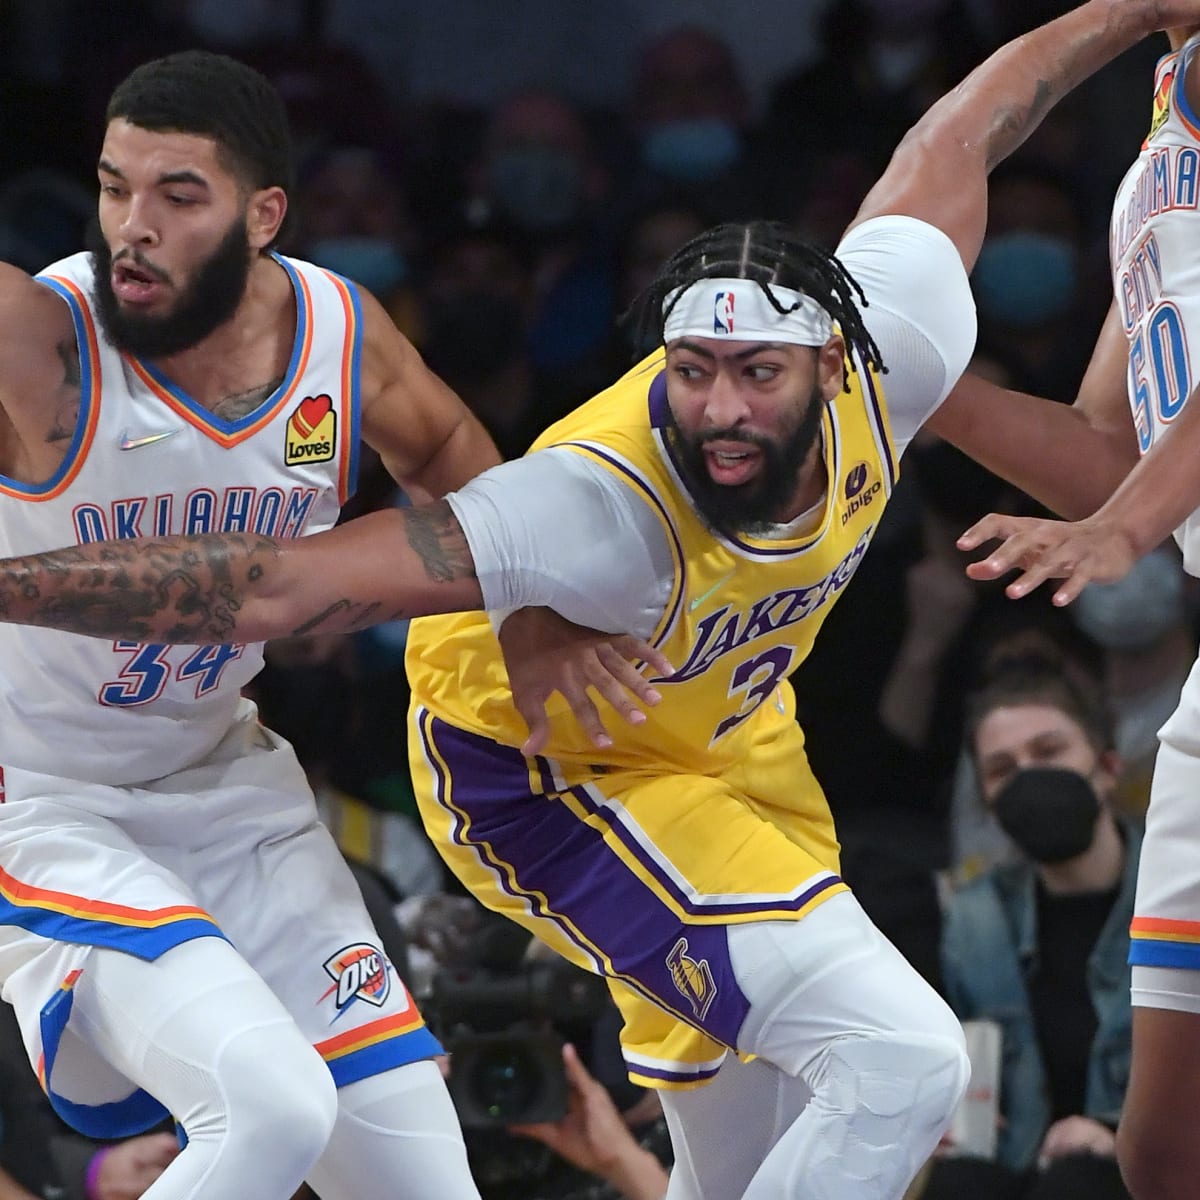 Lakers' Anthony Davis (stress injury) out indefinitely